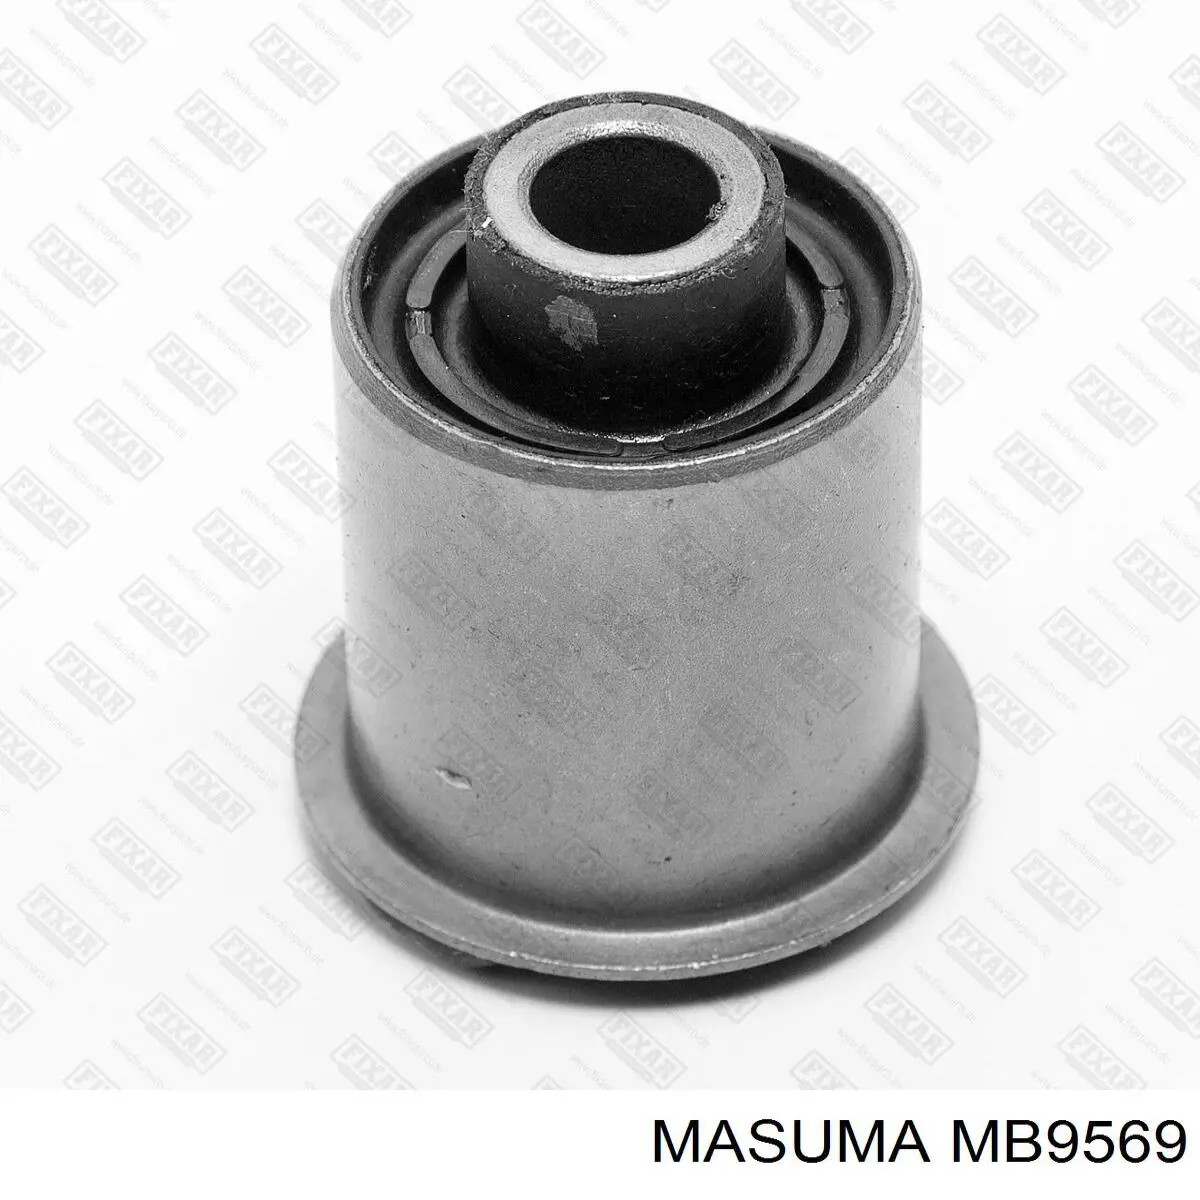 MB9569 Masuma шаровая опора задней подвески нижняя